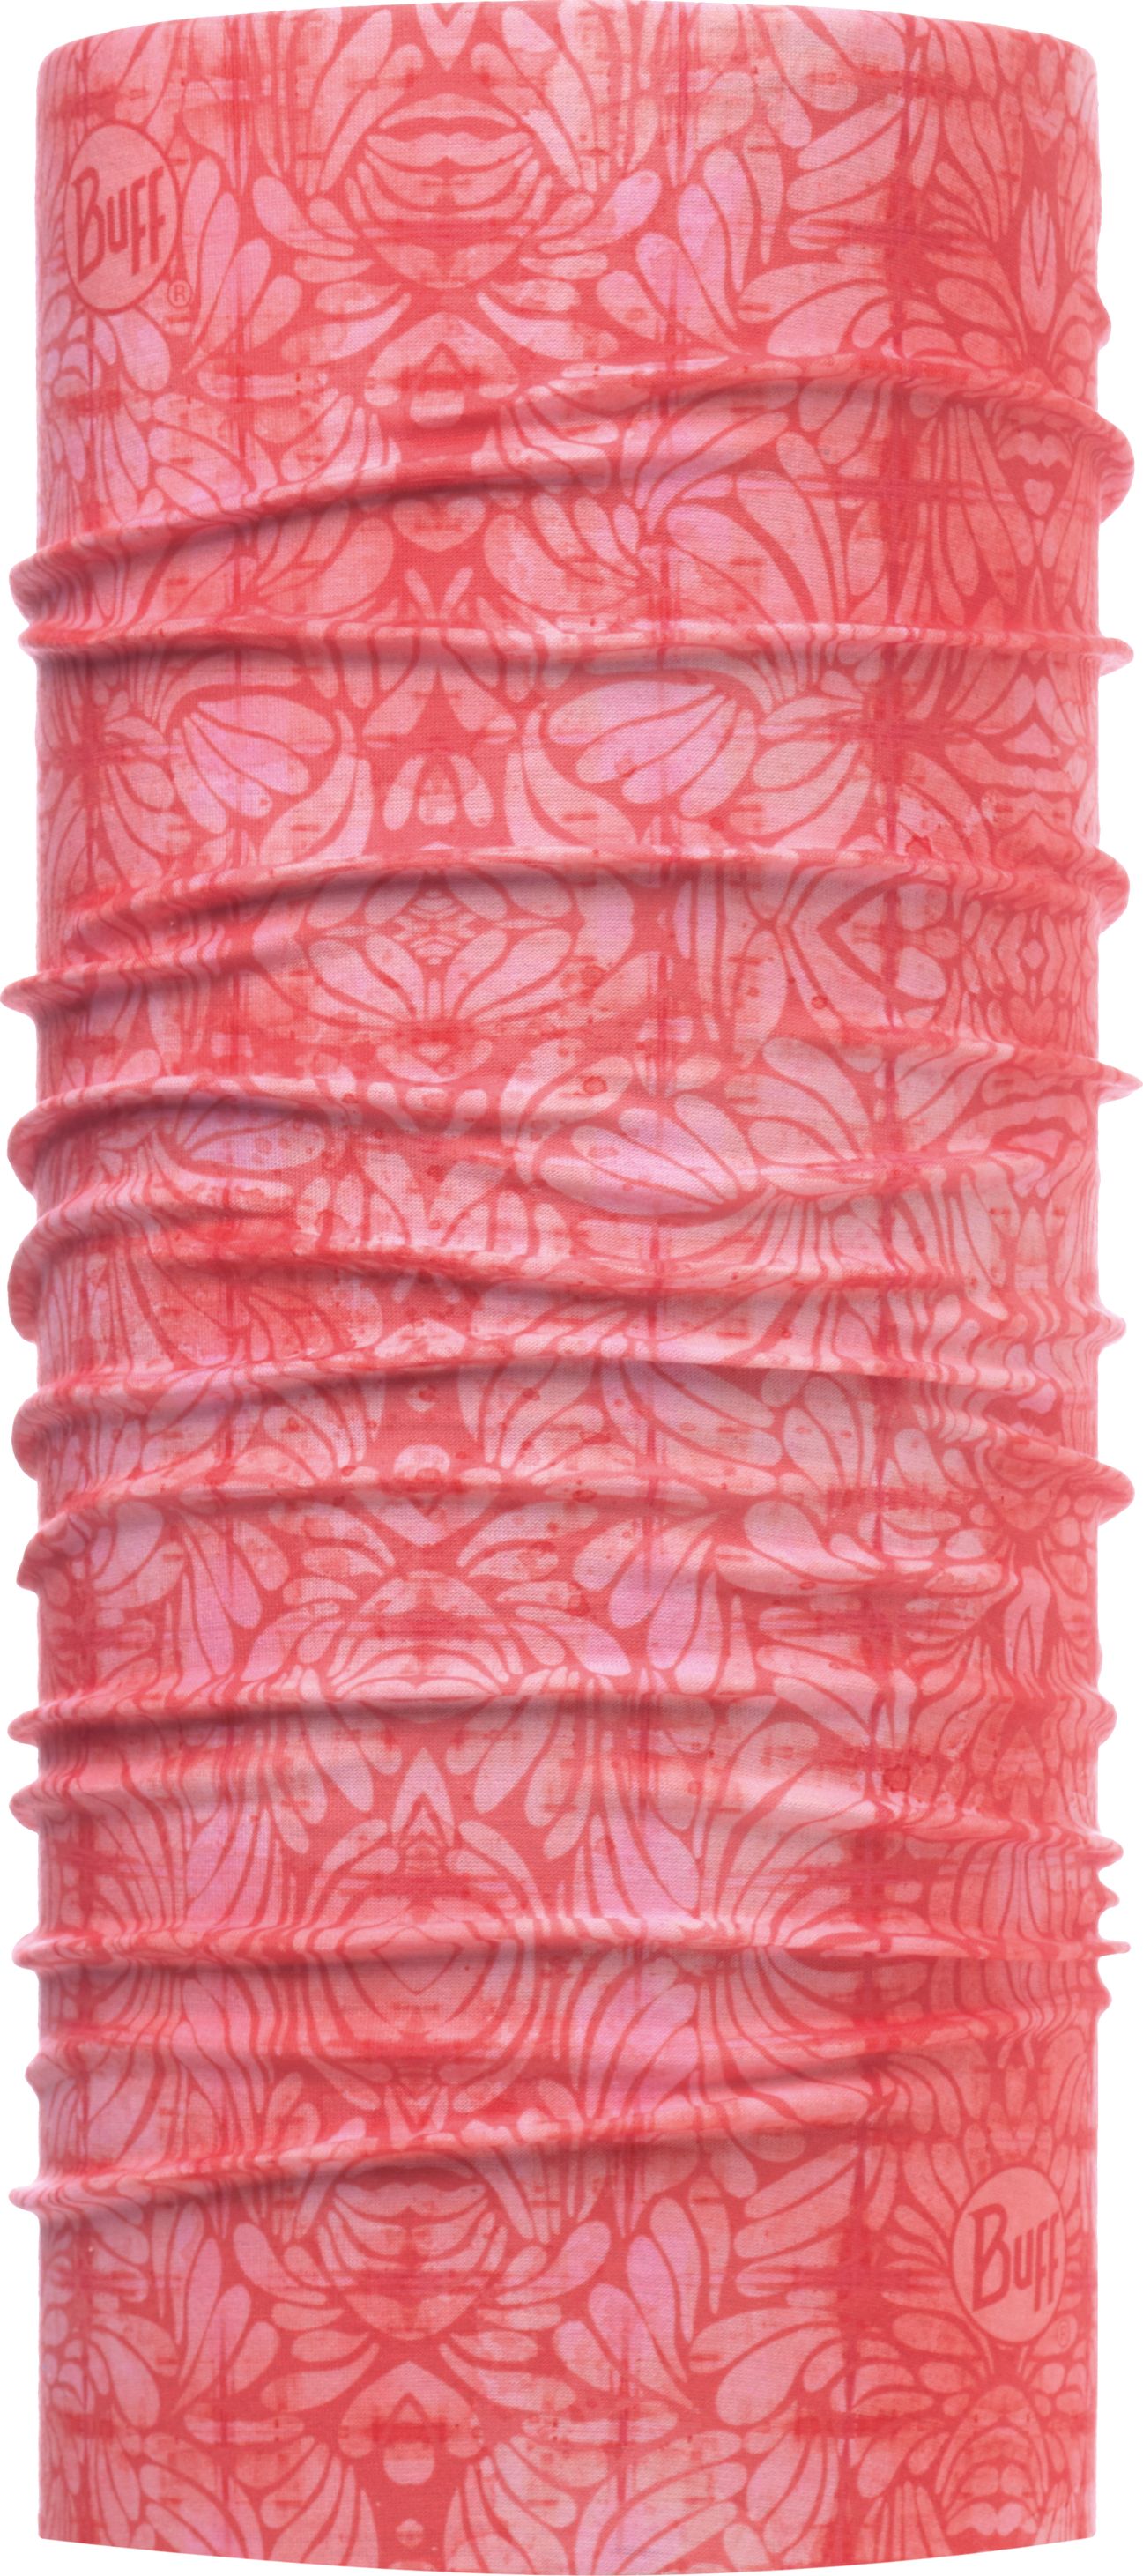 Бандана Buff UV Protection Calyx Salmon Rose, цвет: лососевый. 117067.531.10.00. Размер универсальный